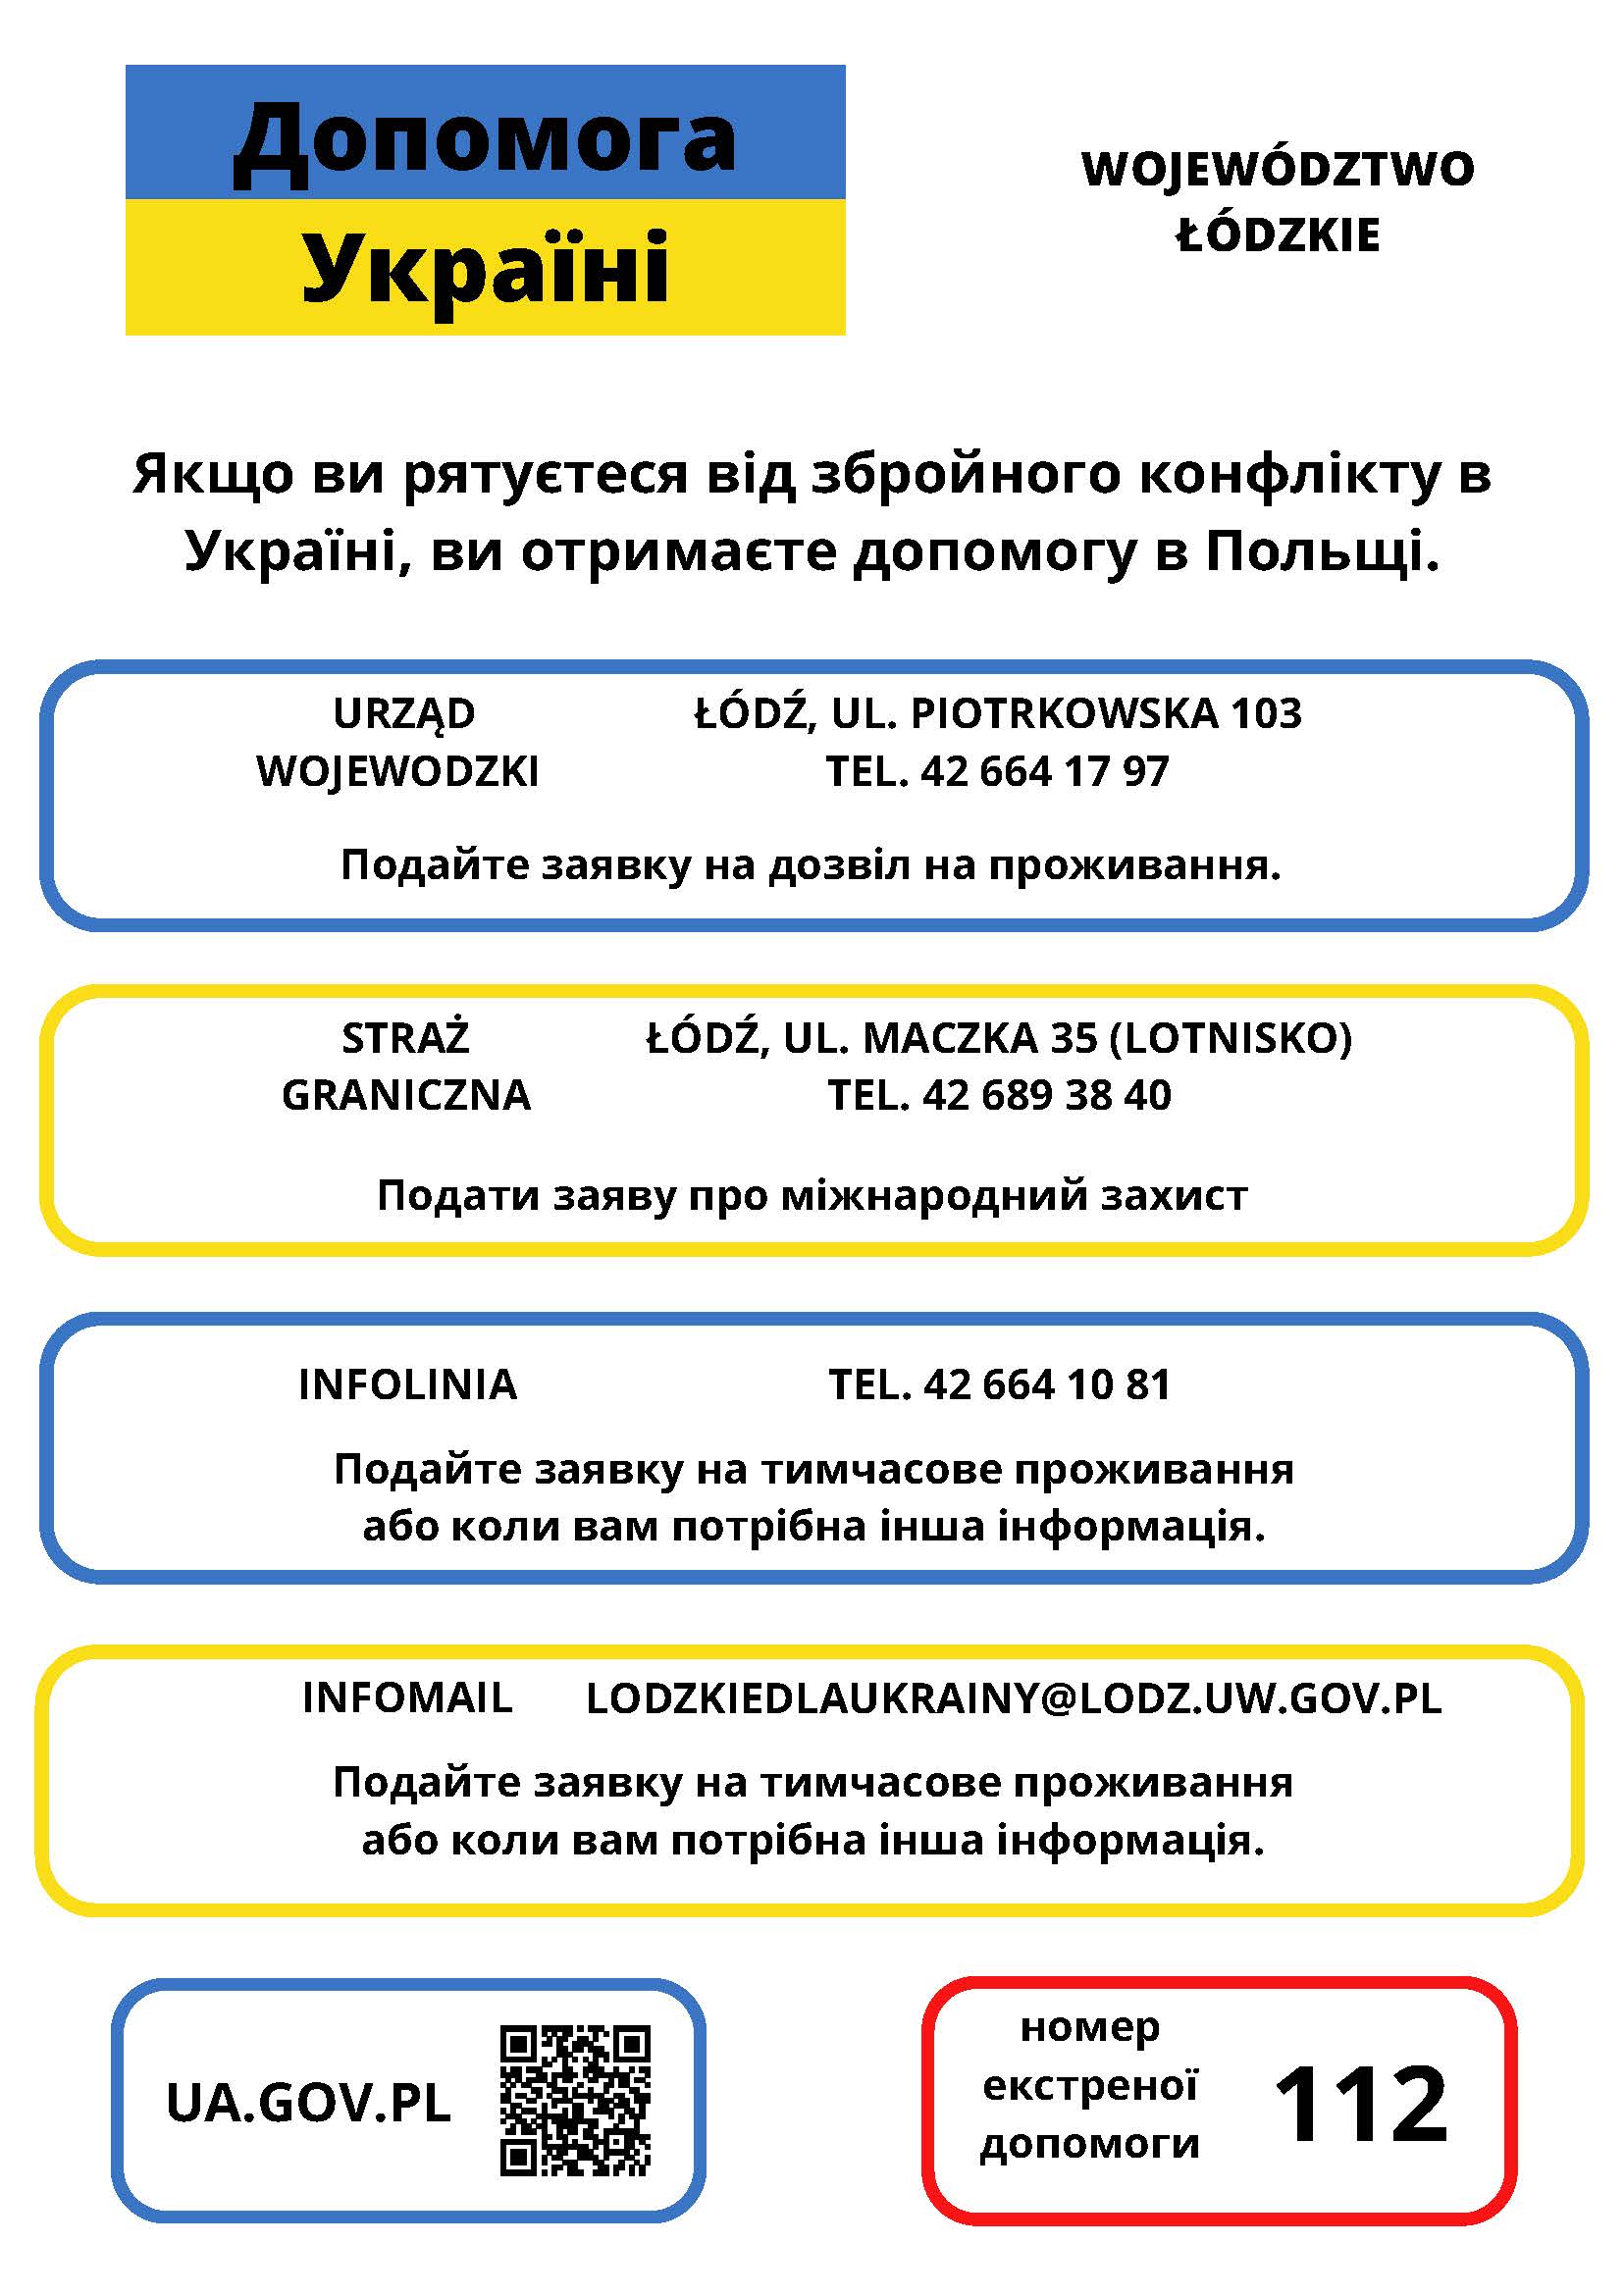 Grafika z napisami w języku ukraińskim zawierająca dane urzędu wojewódzkiego, straży granicznej i infolinii